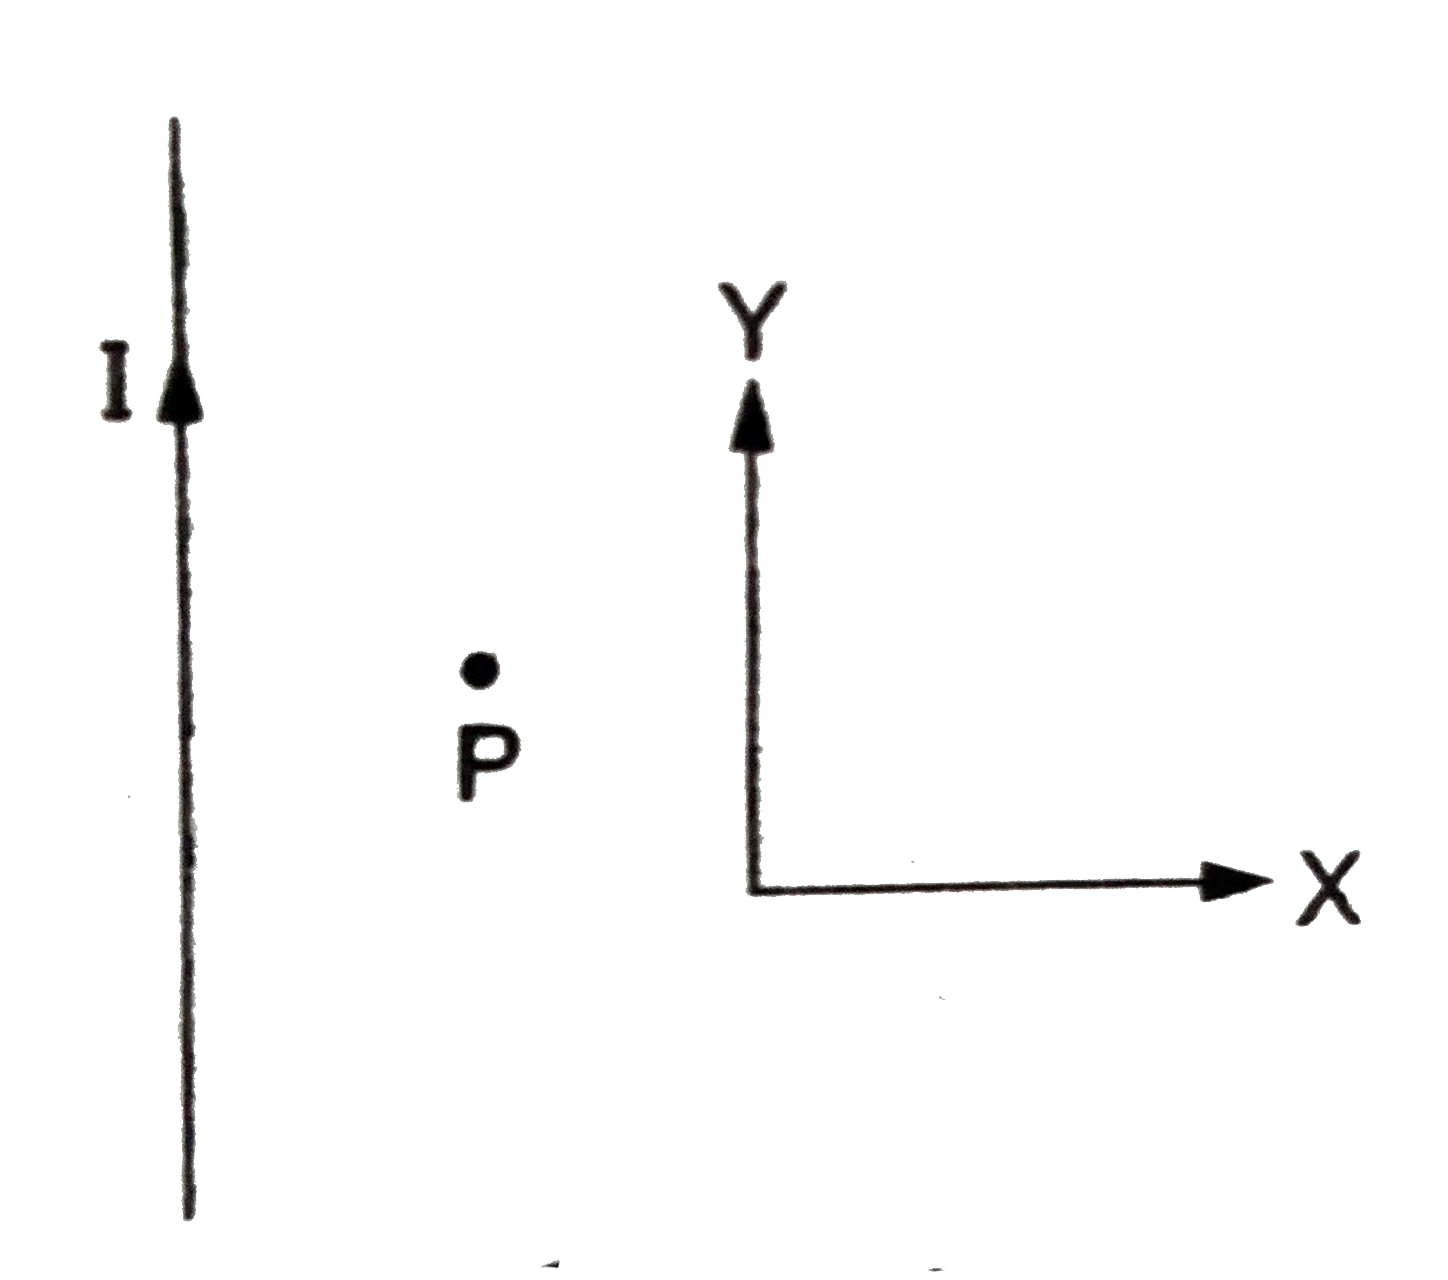 अनंत लंबाई के एक सीधे तार पर स्थायी धारा I प्रवाहित की जाती है जिसके निकट बिंदु P पर एक इलेक्ट्रॉन को वेग vec v  प्रदान किया जाता है ।  कॉलम A में व्यक्त वेग vecv की दिशा तथा कॉलम B में व्यक्त इलेक्ट्रॉन के विक्षेप की दिशा के बीच मेल स्थापित करे ।